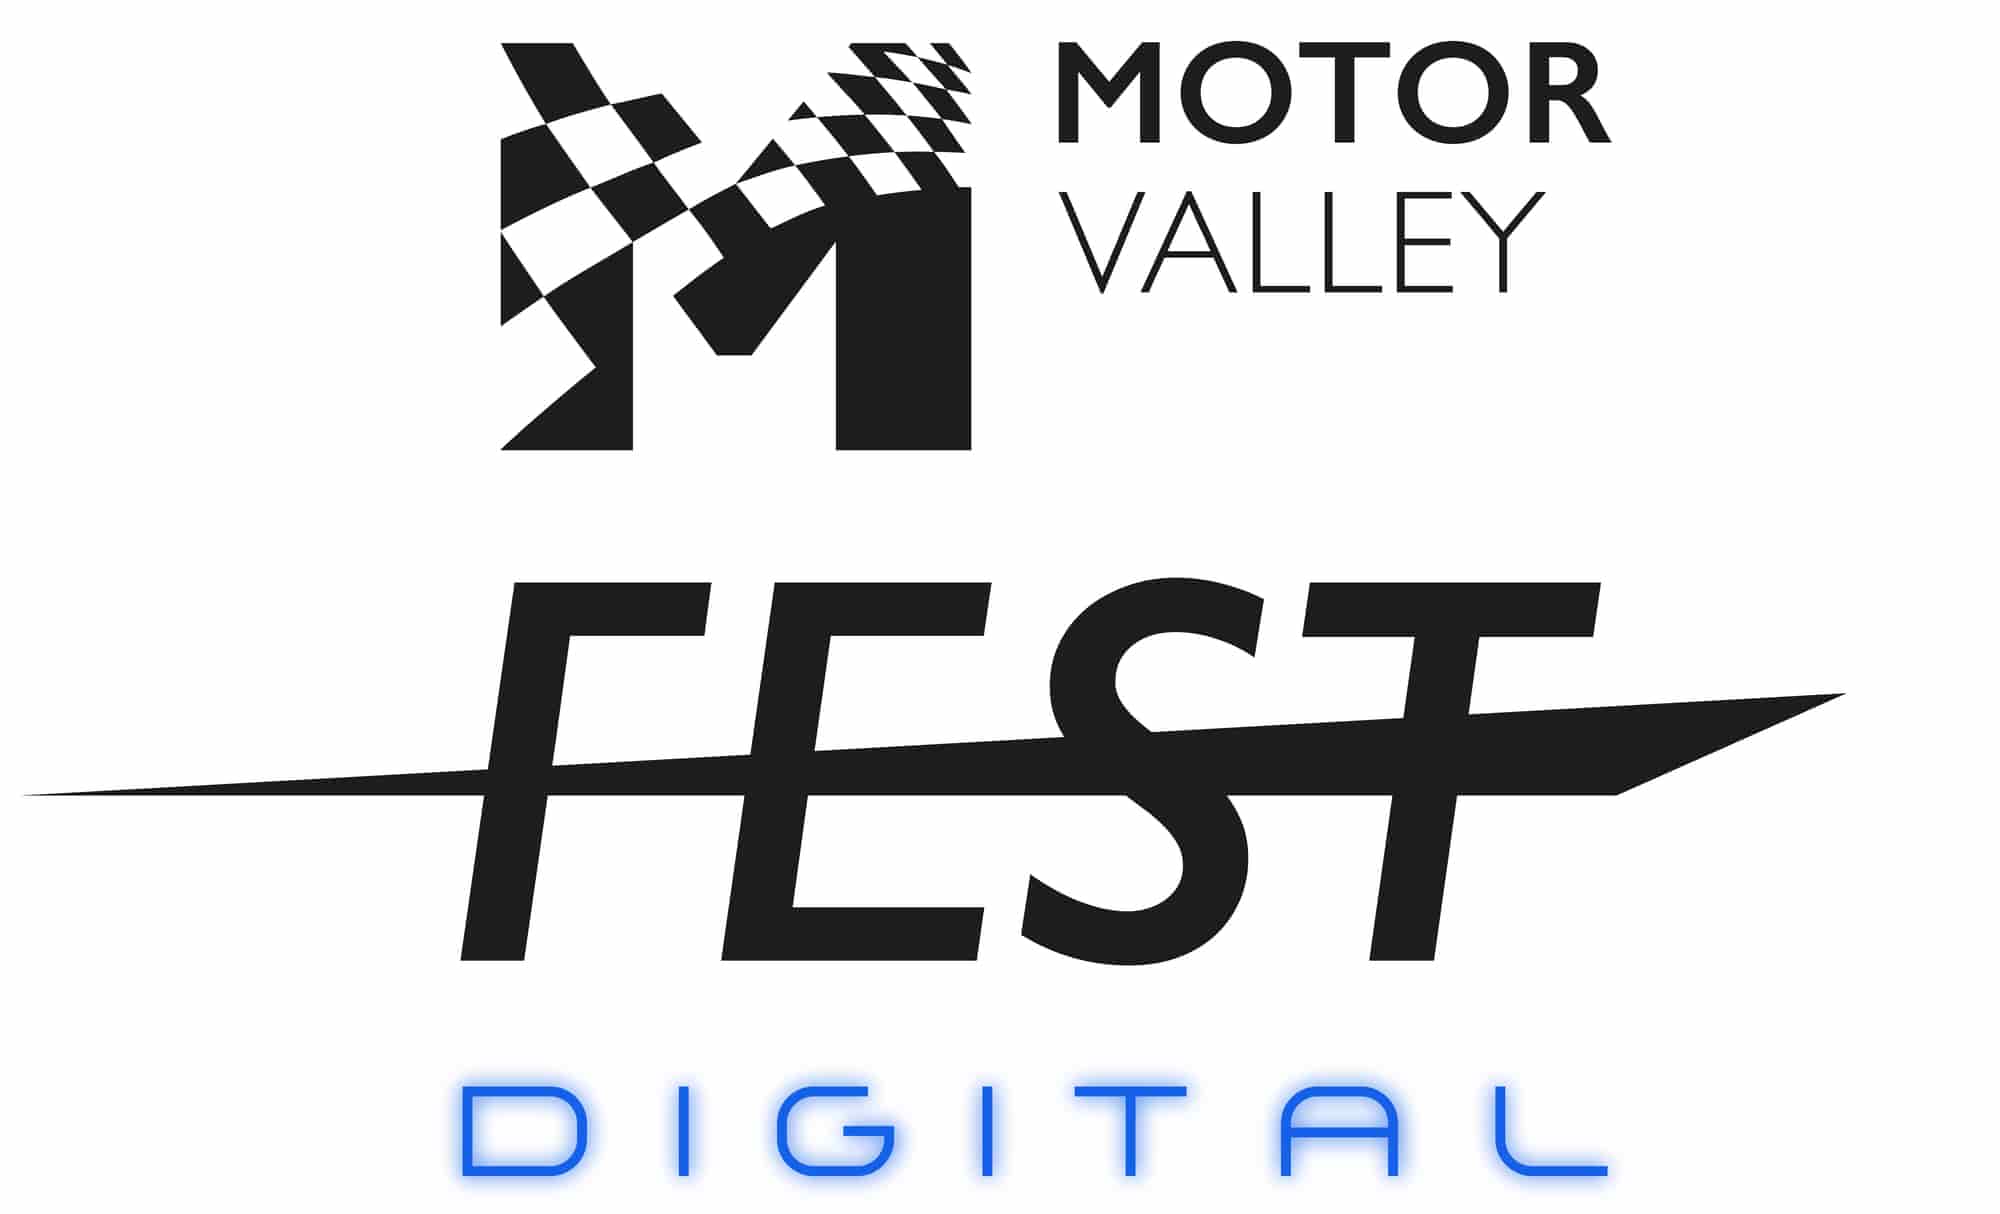 Motor Valley Fest Digital